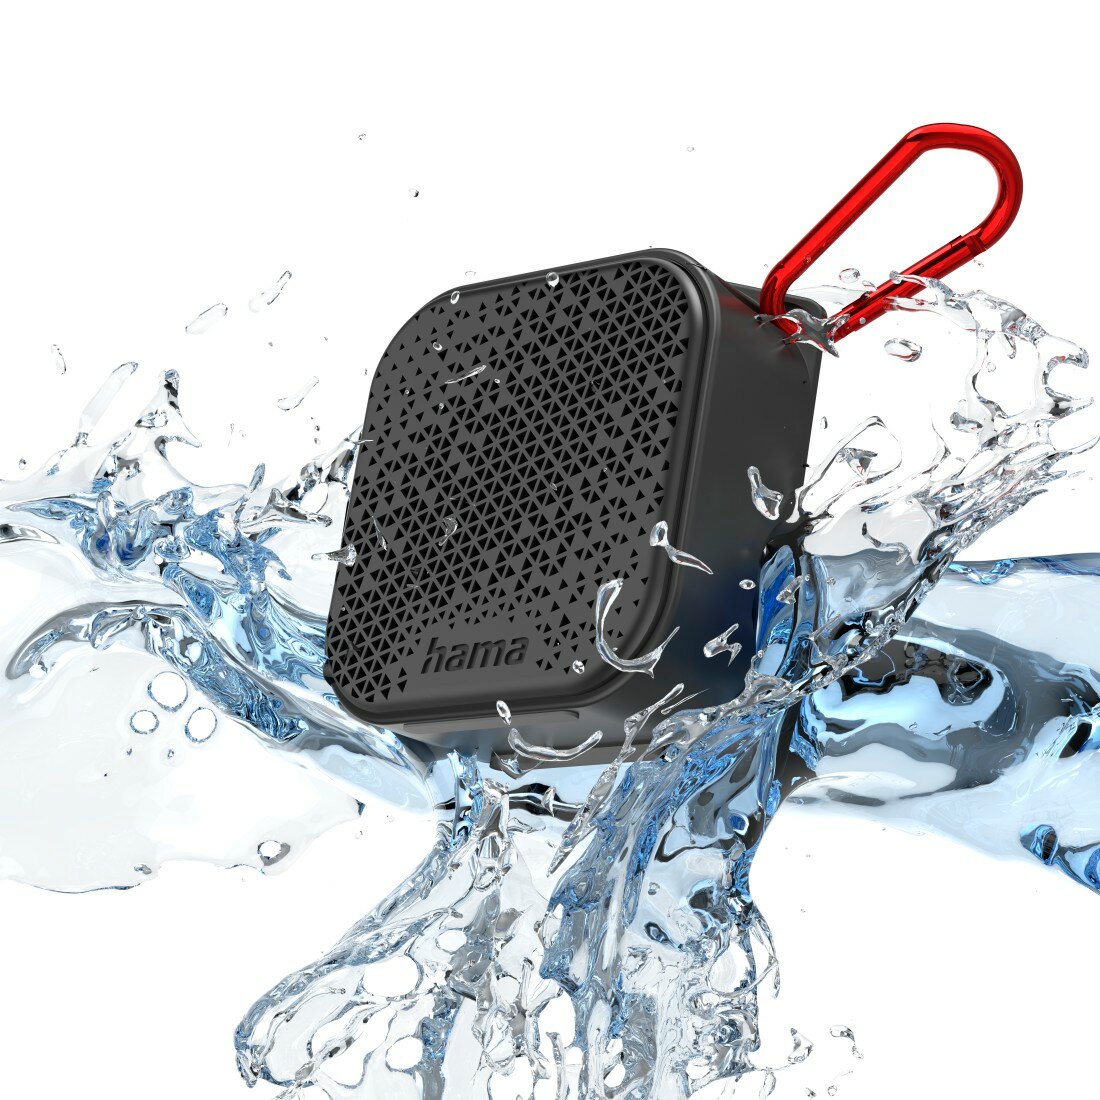 Głośnik mobilny Hama 'POCKET 2.0' spryskiwany wodą 